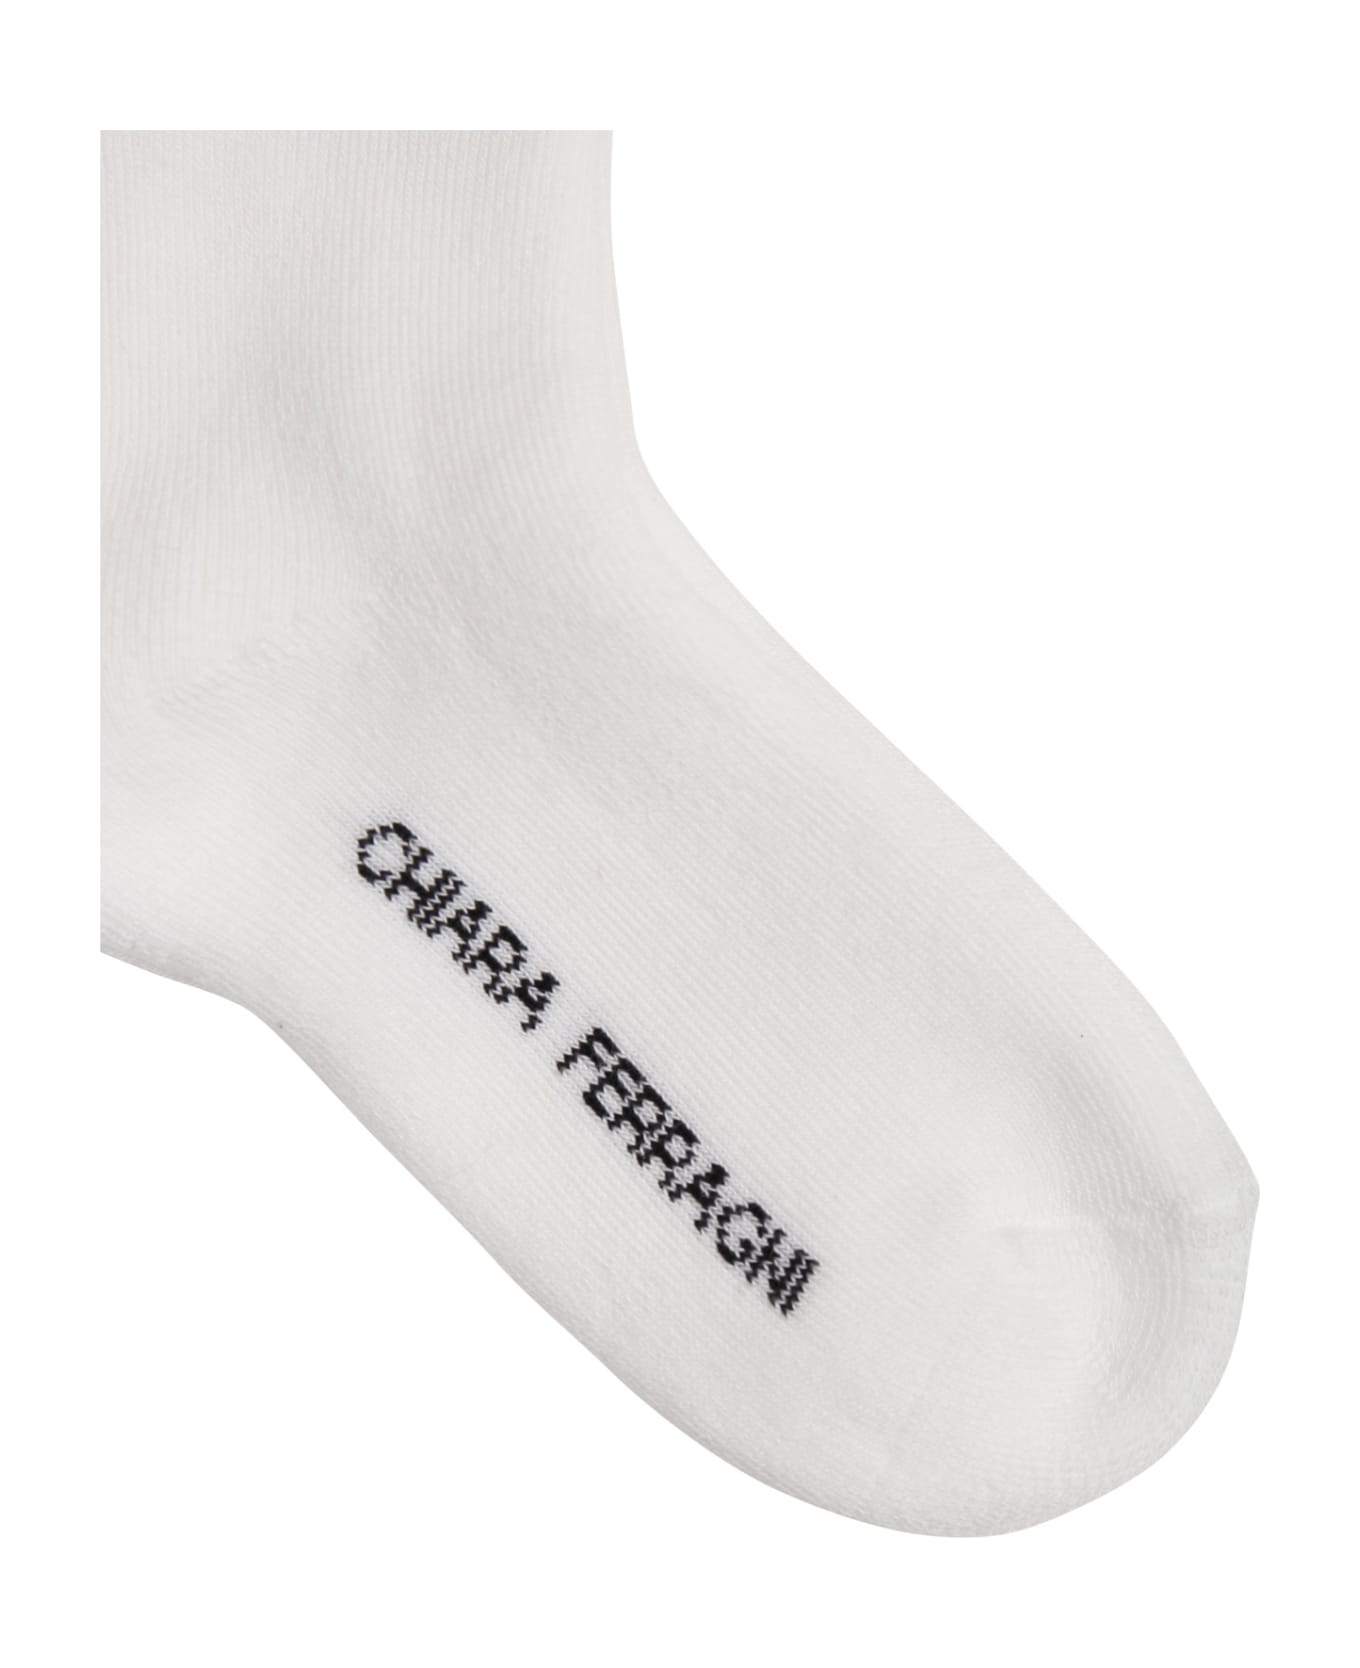 Chiara Ferragni White Socks For Girl With Flirting Eyes And Hearts - White